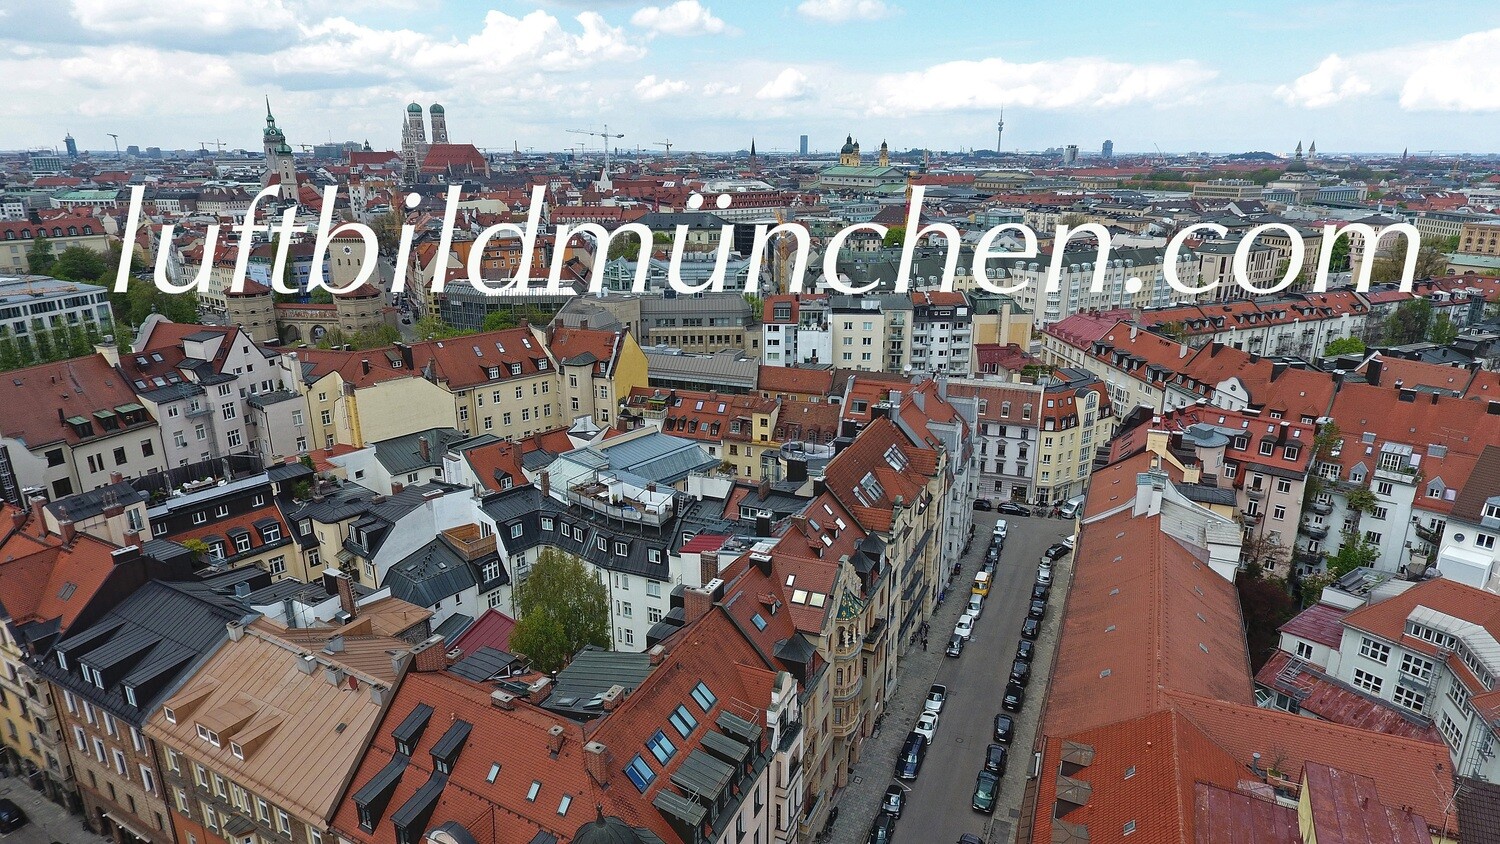 Luftbildfoto, Luftaufnahme, Luftbild, Foto mit Drohne, München, Foto von oben, Wohngebiet, Innenstadt, Lehel, Frauenkirche, Olympiaturm,